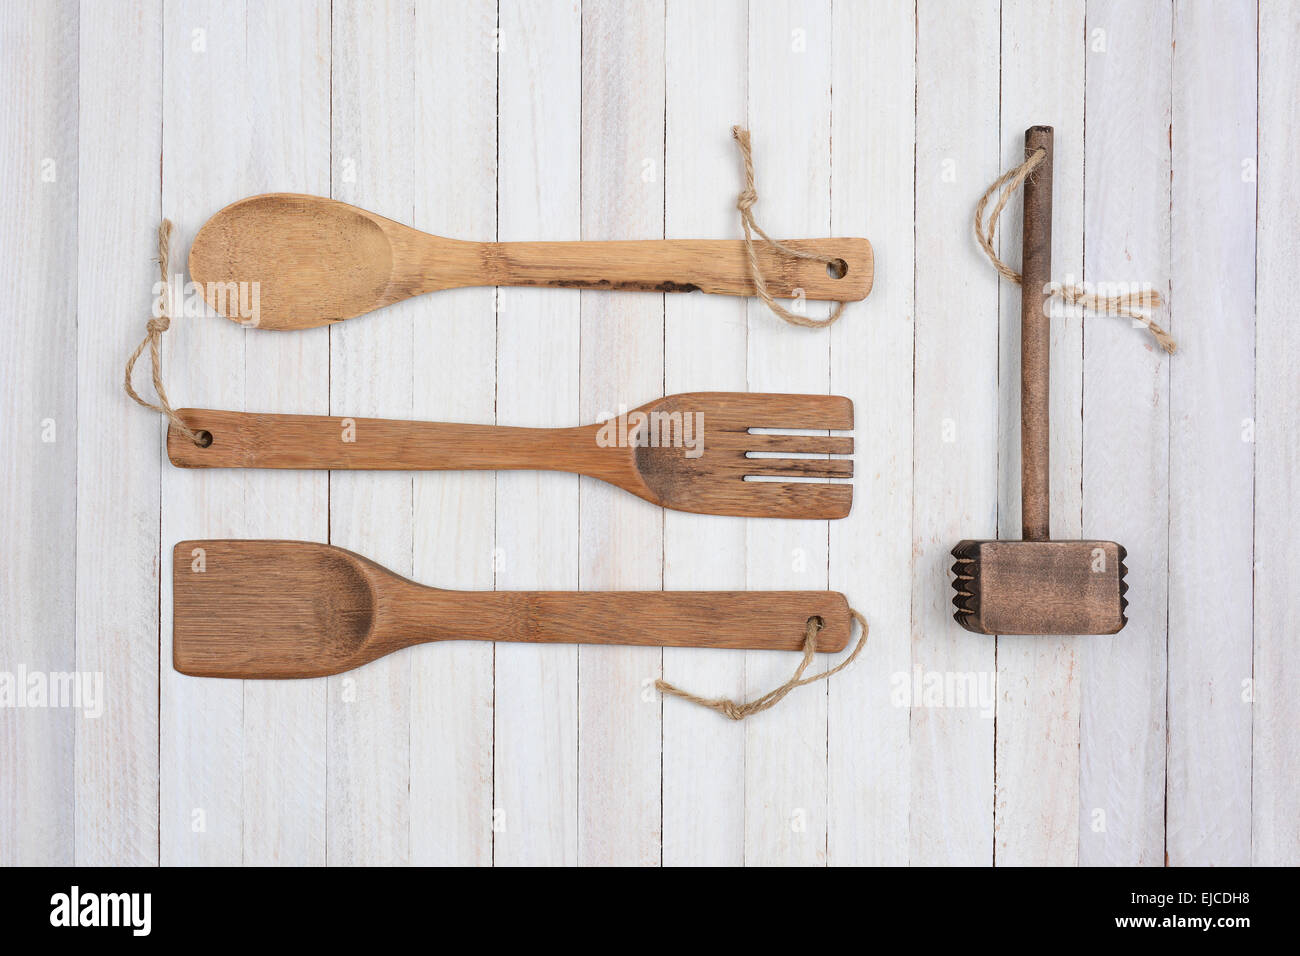 Tettuccio di colpo di legno quattro utensili da cucina in un ambiente rustico in legno bianco tavola. Gli elementi sono: cucchiaio, forcella, spatola, e un mazzuolo. Foto Stock